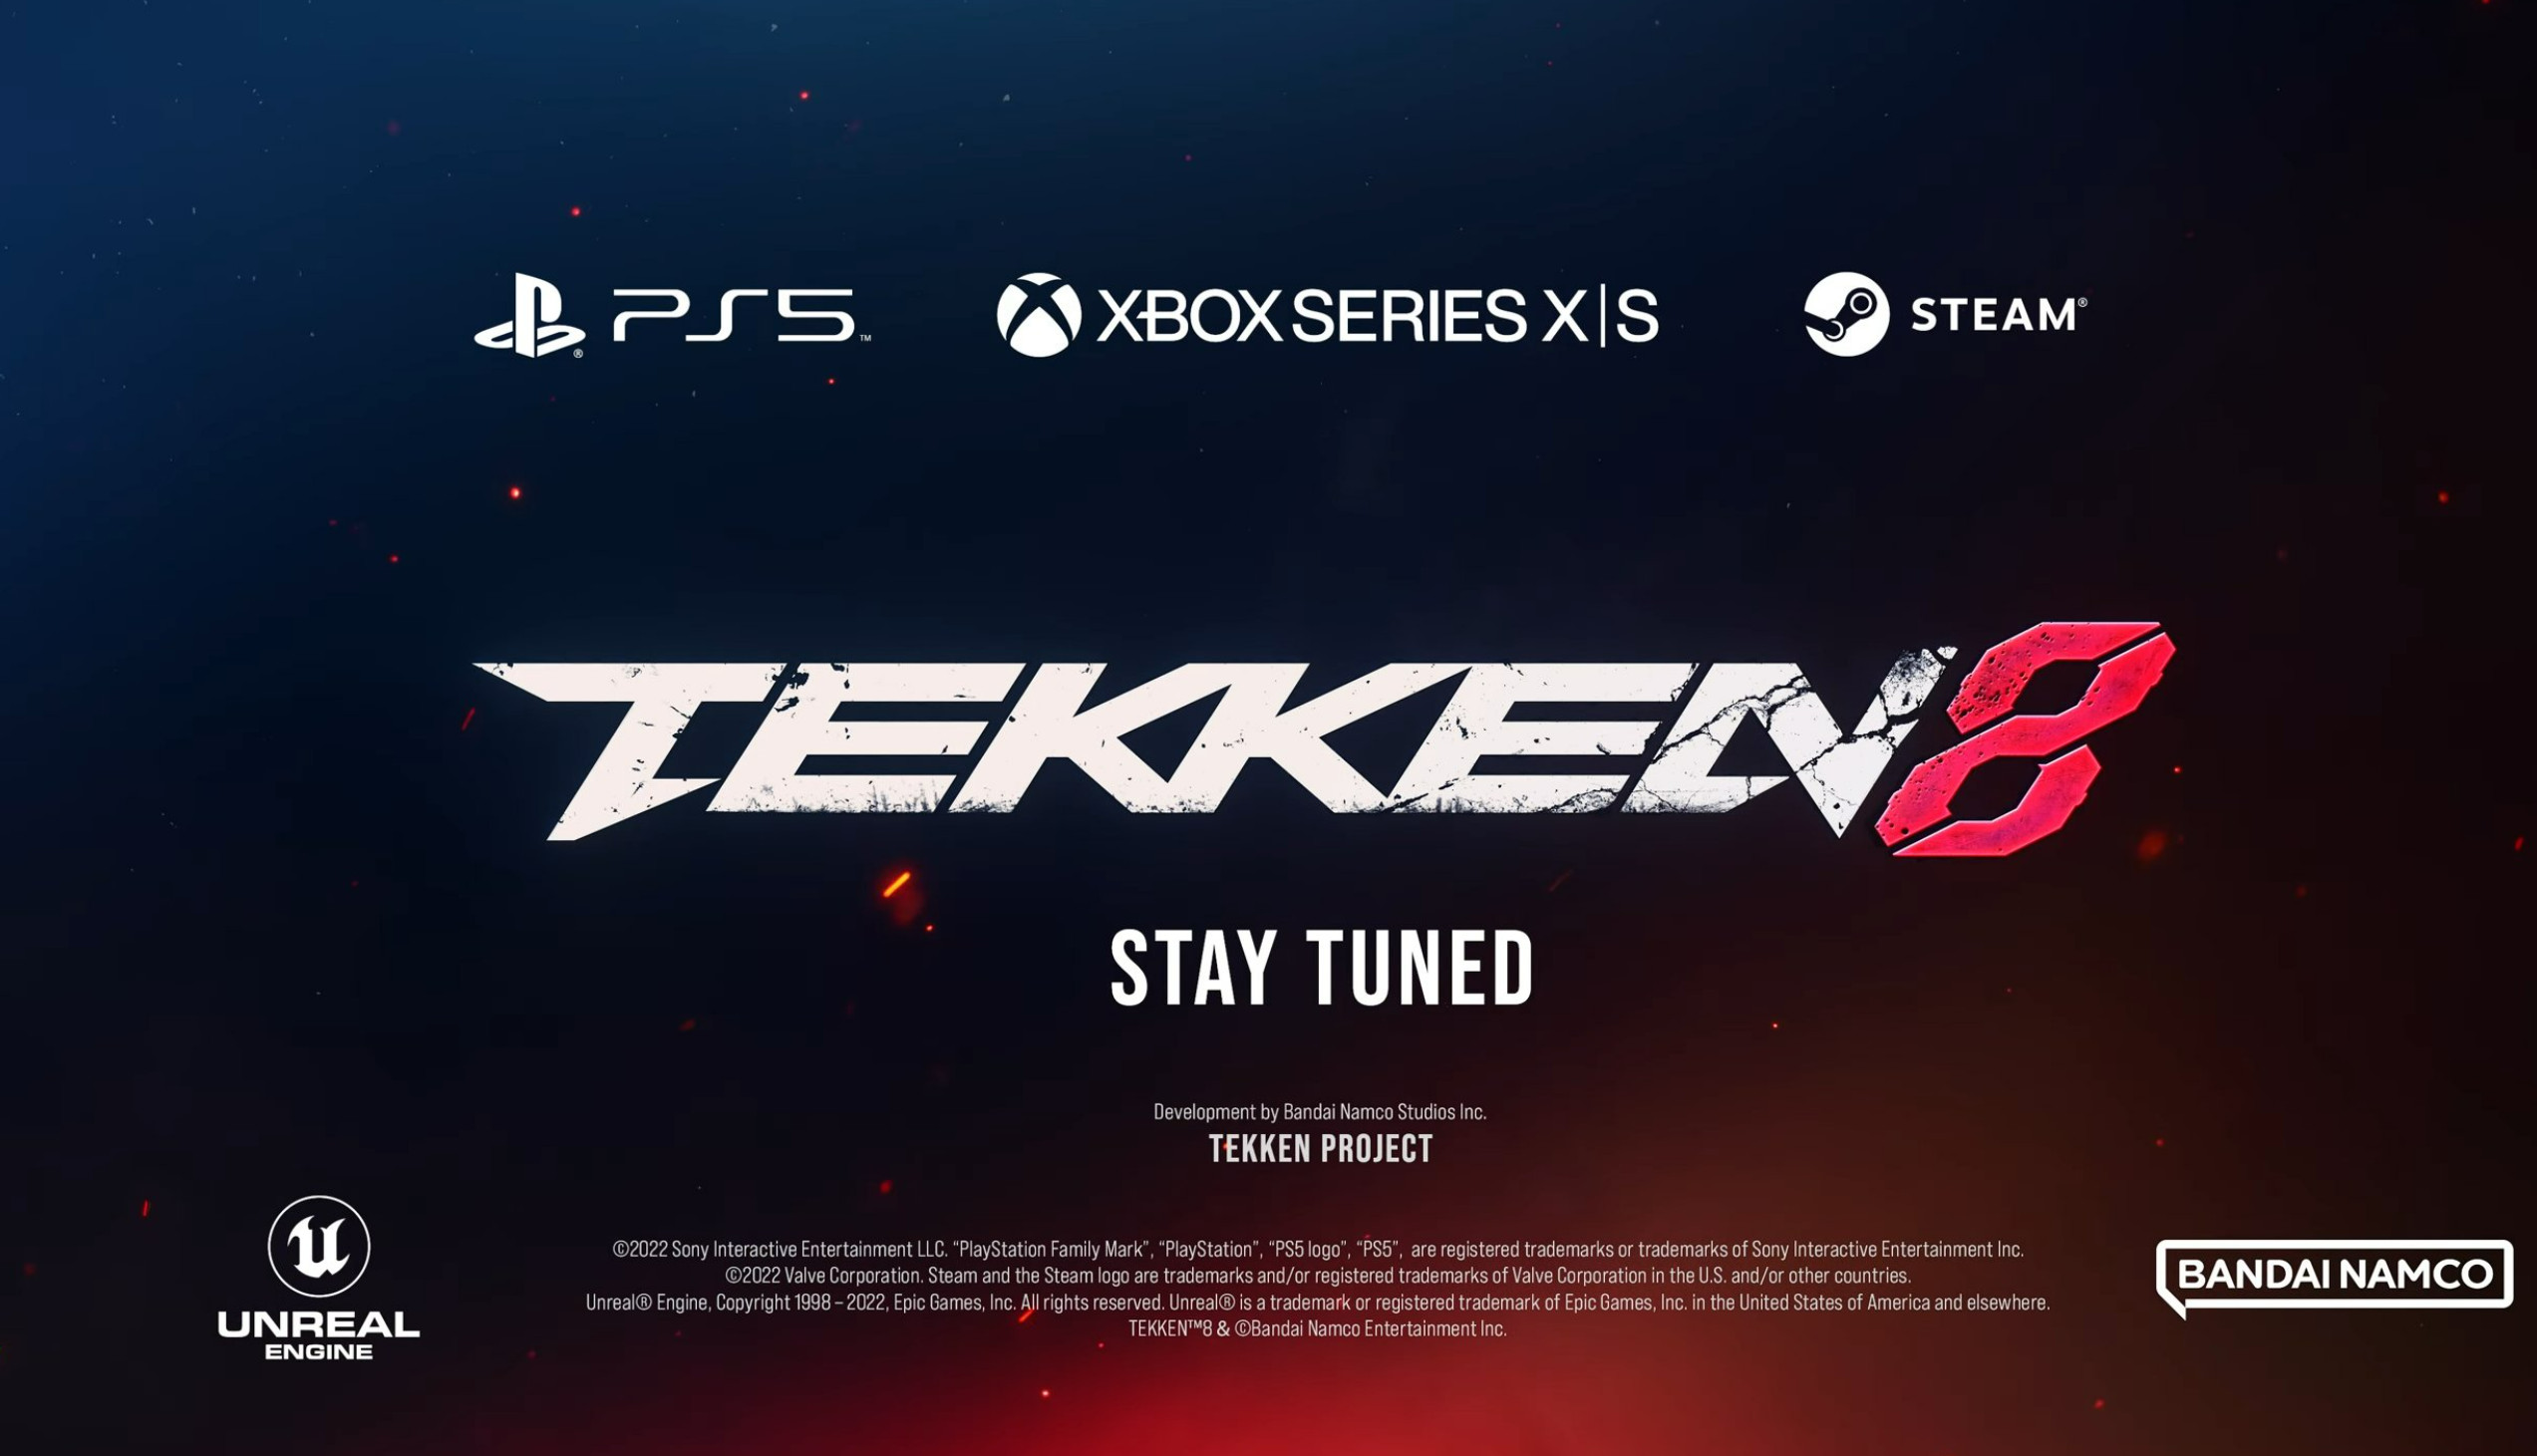 《铁拳8》将会会登陆PC Steam和Xbox 预告片将展示游戏故事模式